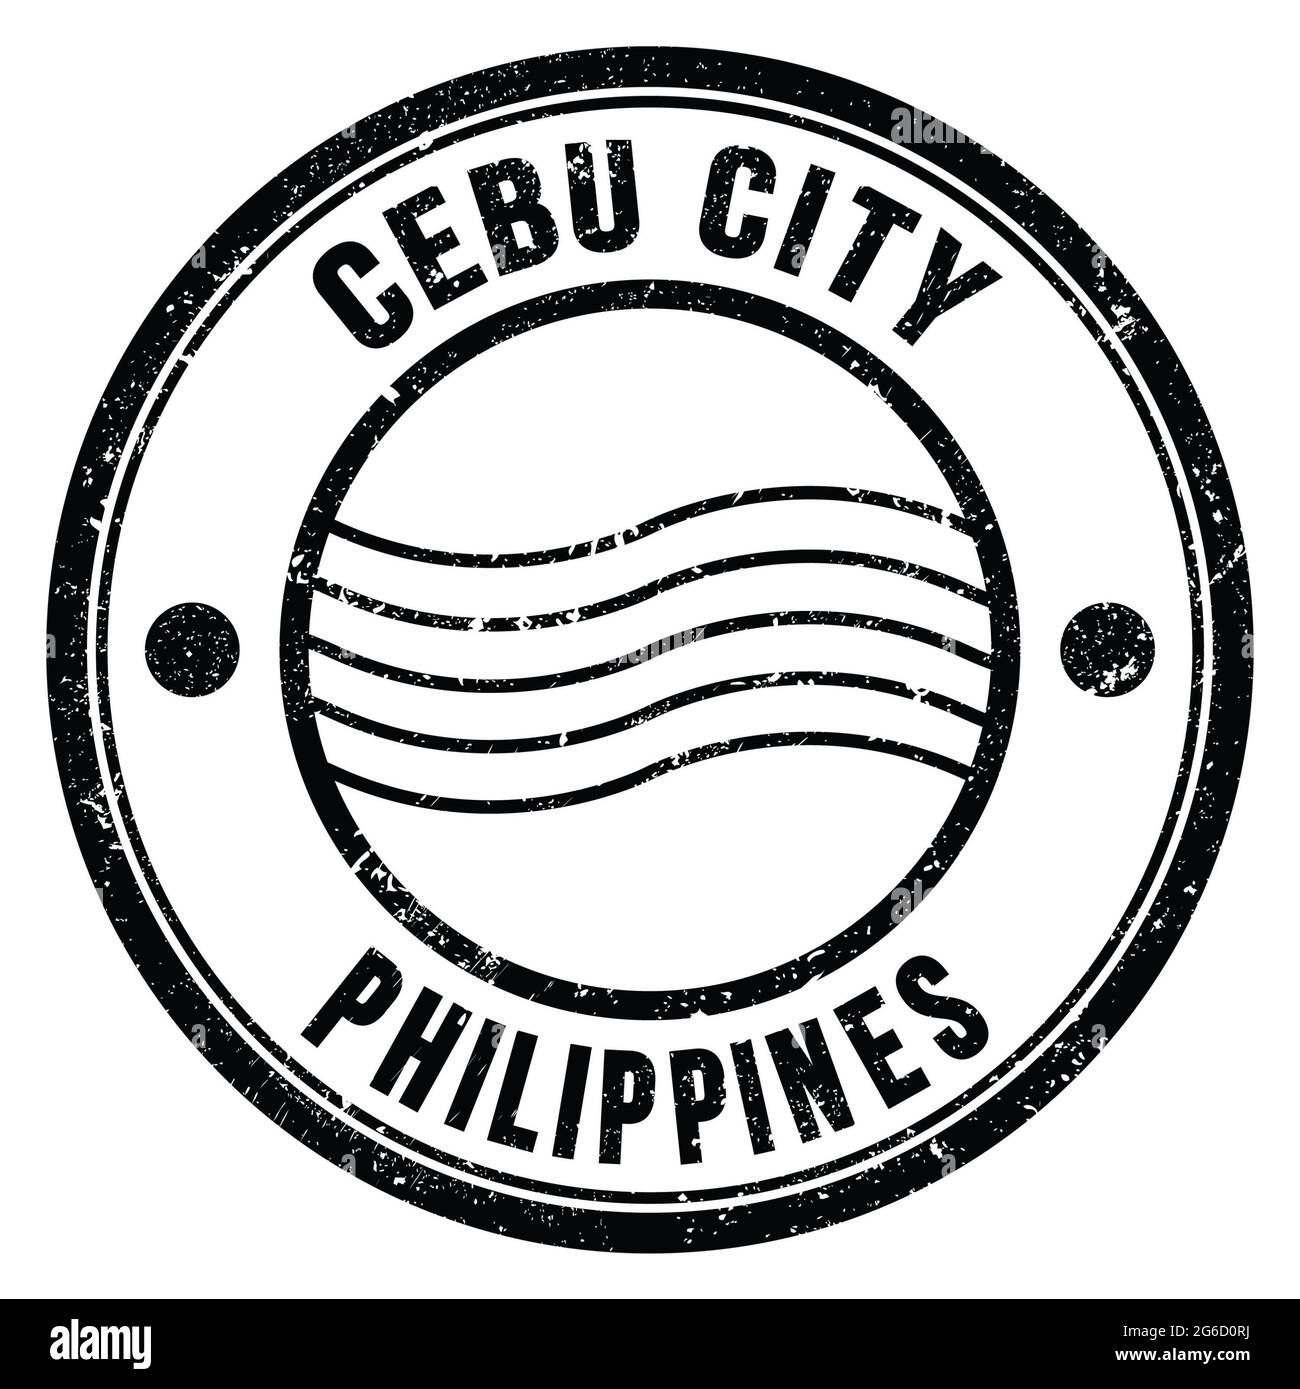 CEBU CITY - PHILIPPINEN, Worte auf schwarzem runden Briefmarke geschrieben Stockfoto